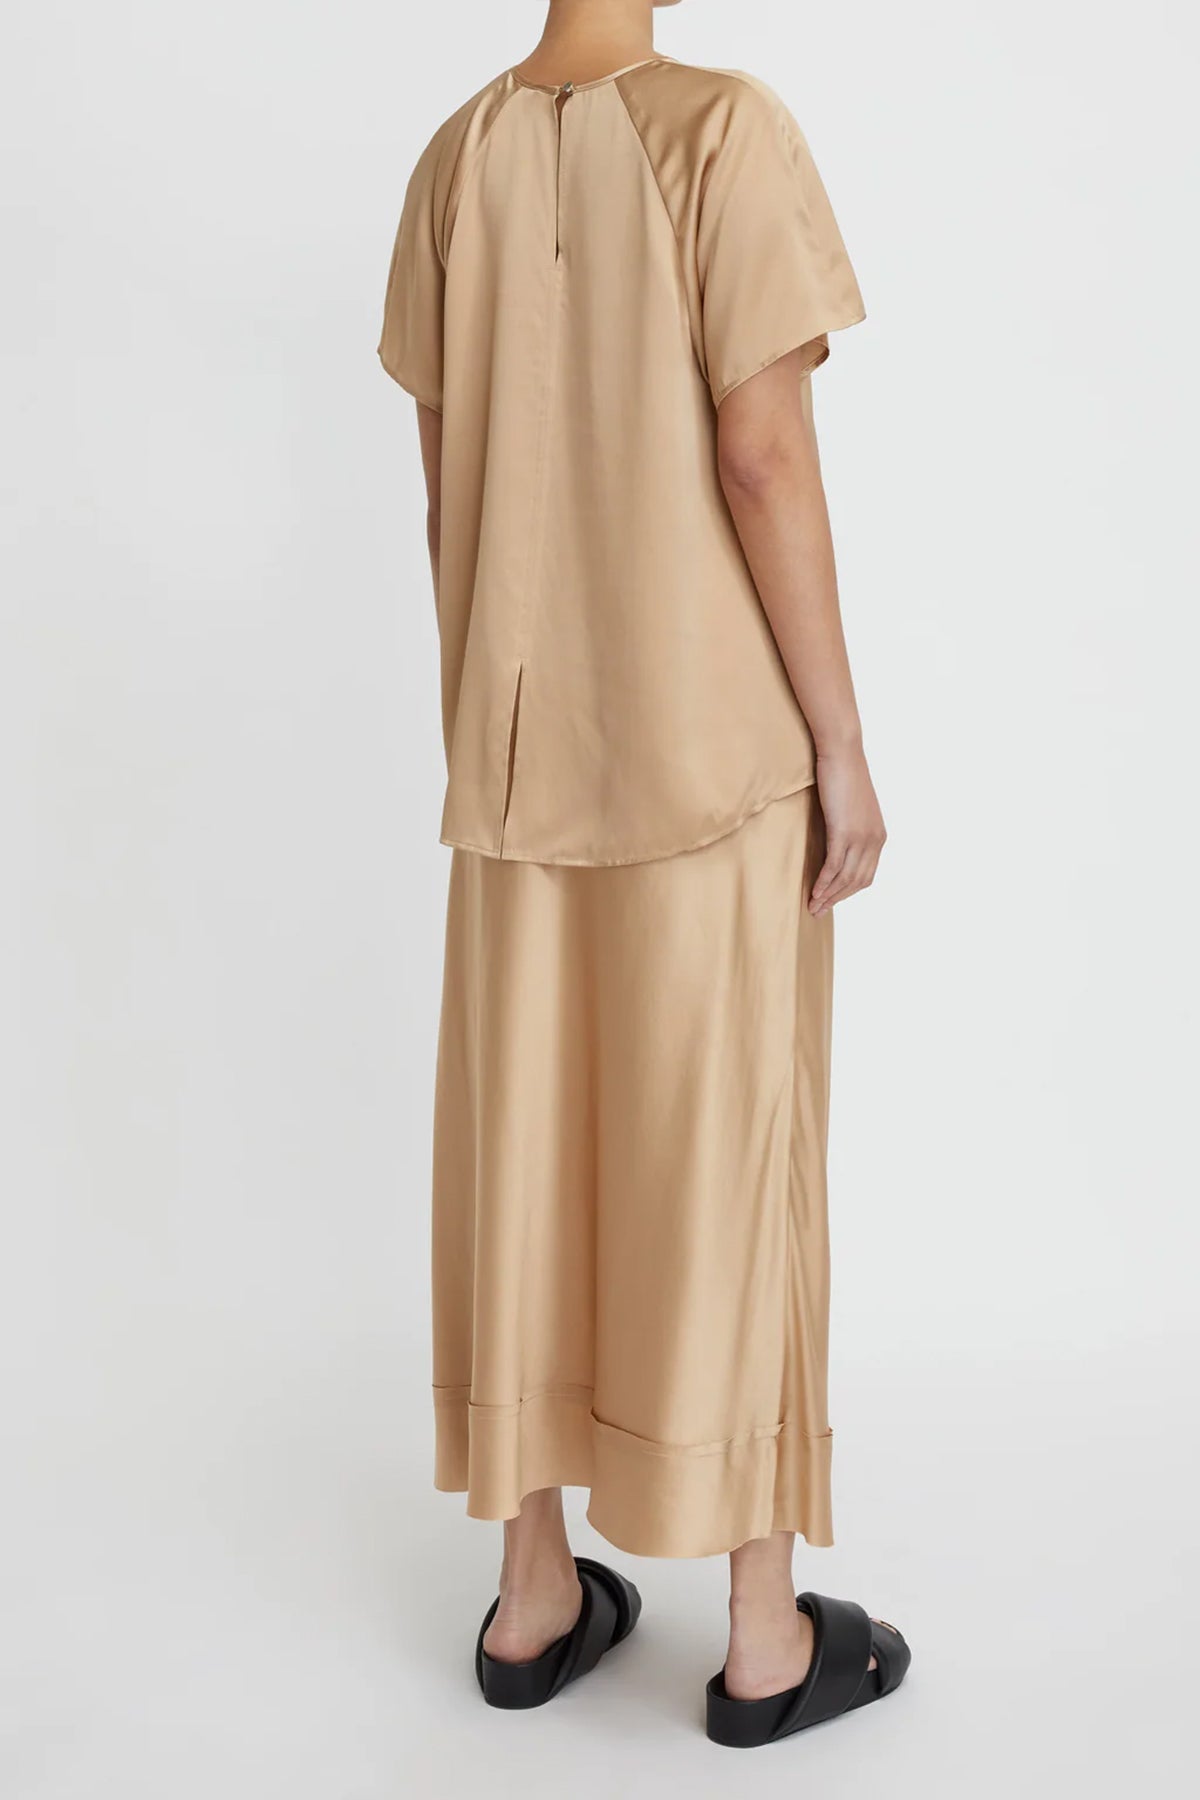 Stella Silk Satin Skirt in Honey - shop-olivia.com